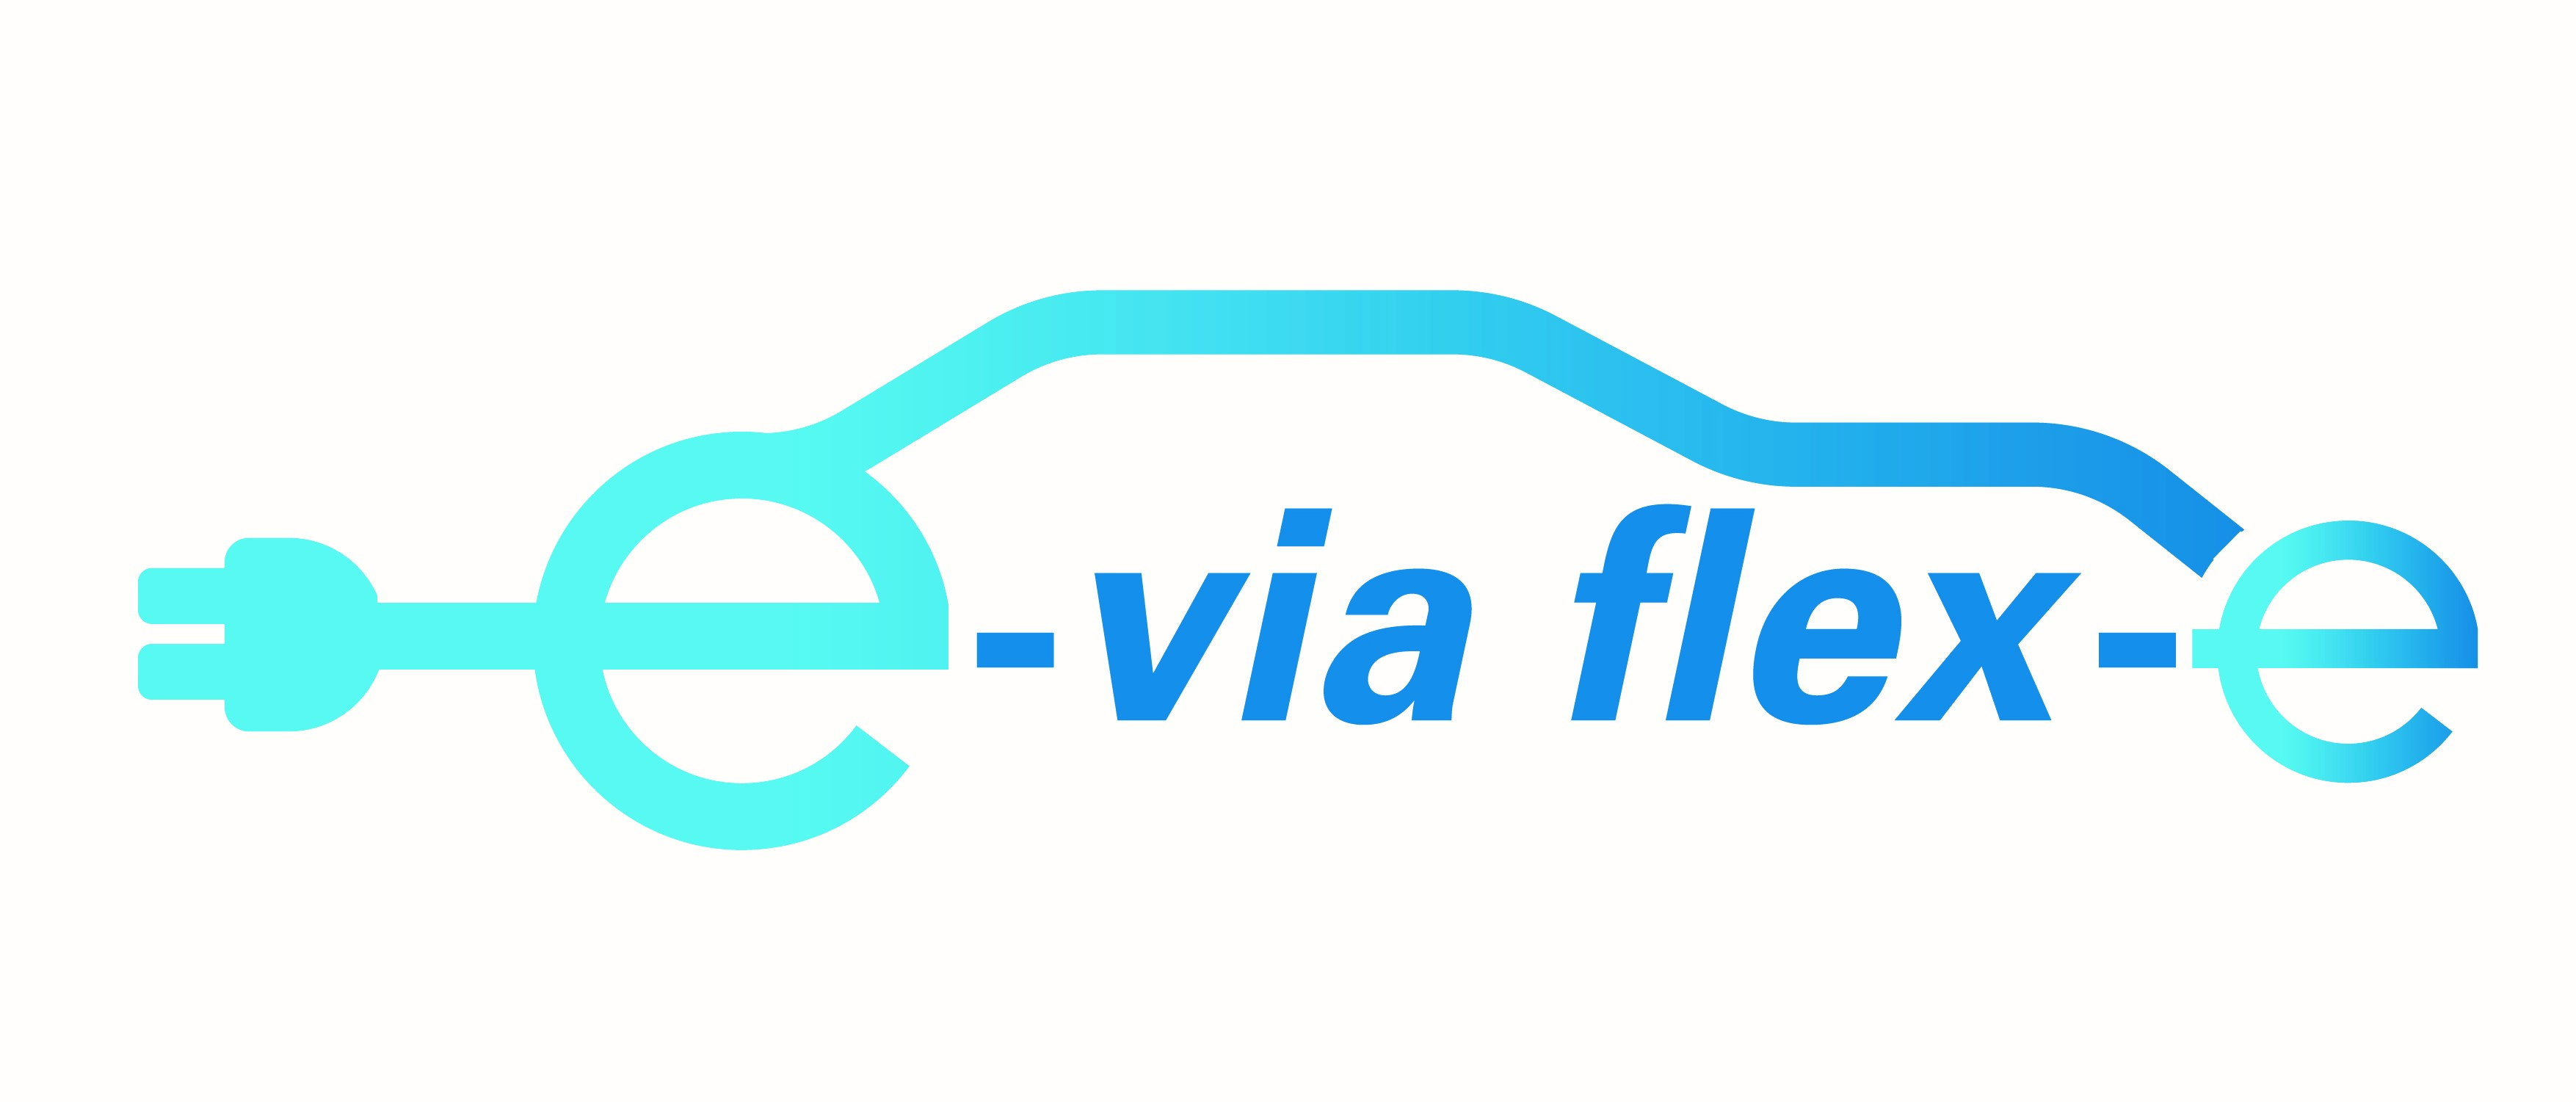 Proyecto E-via flex-e